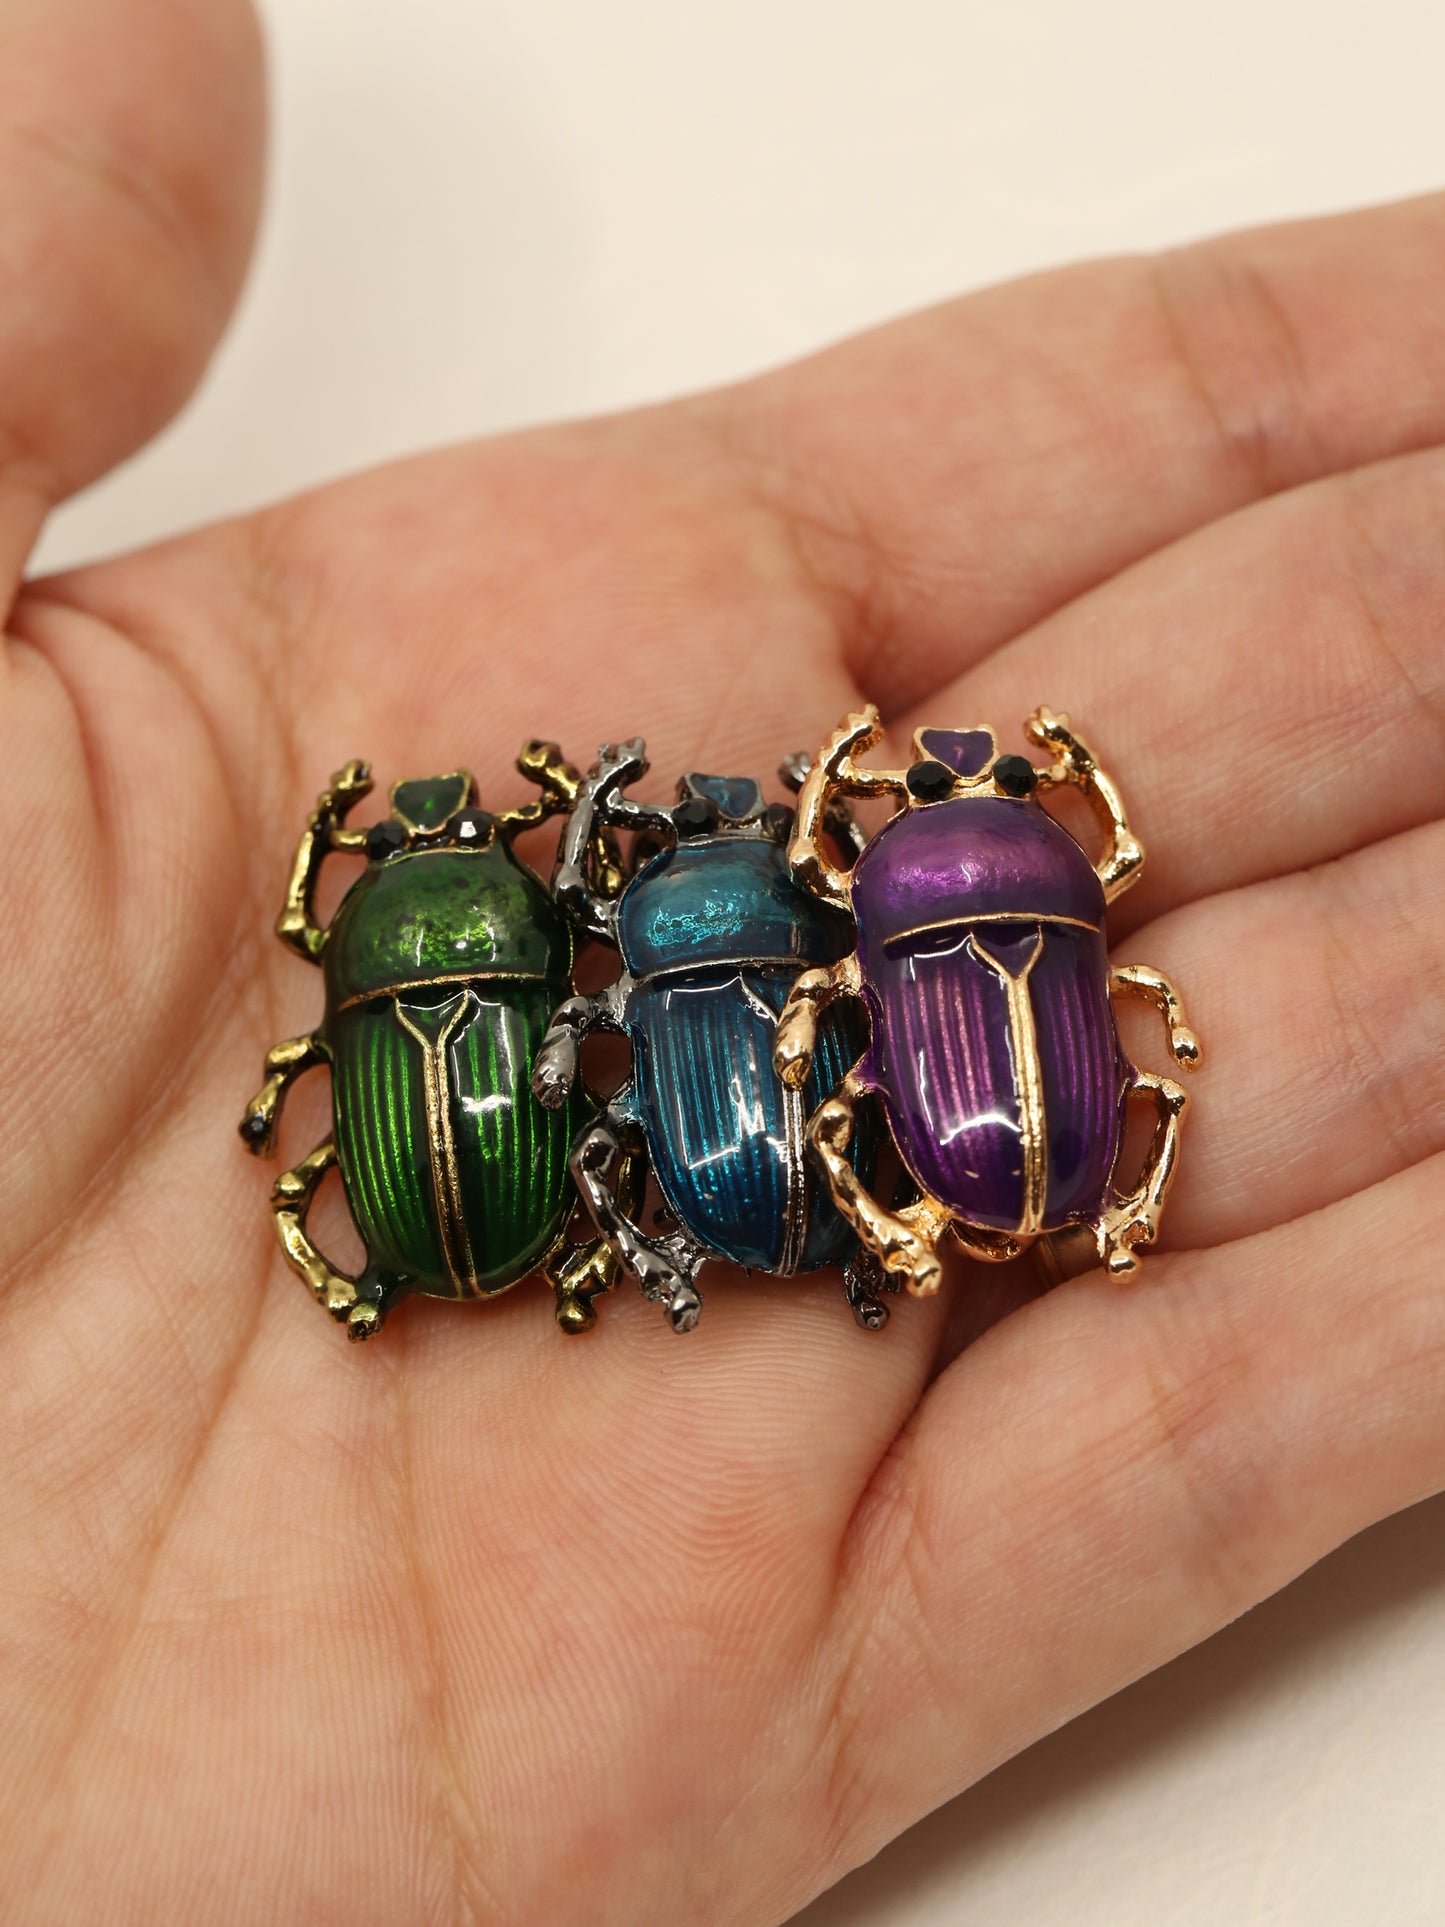 Dung Beetle Brooch - Purple